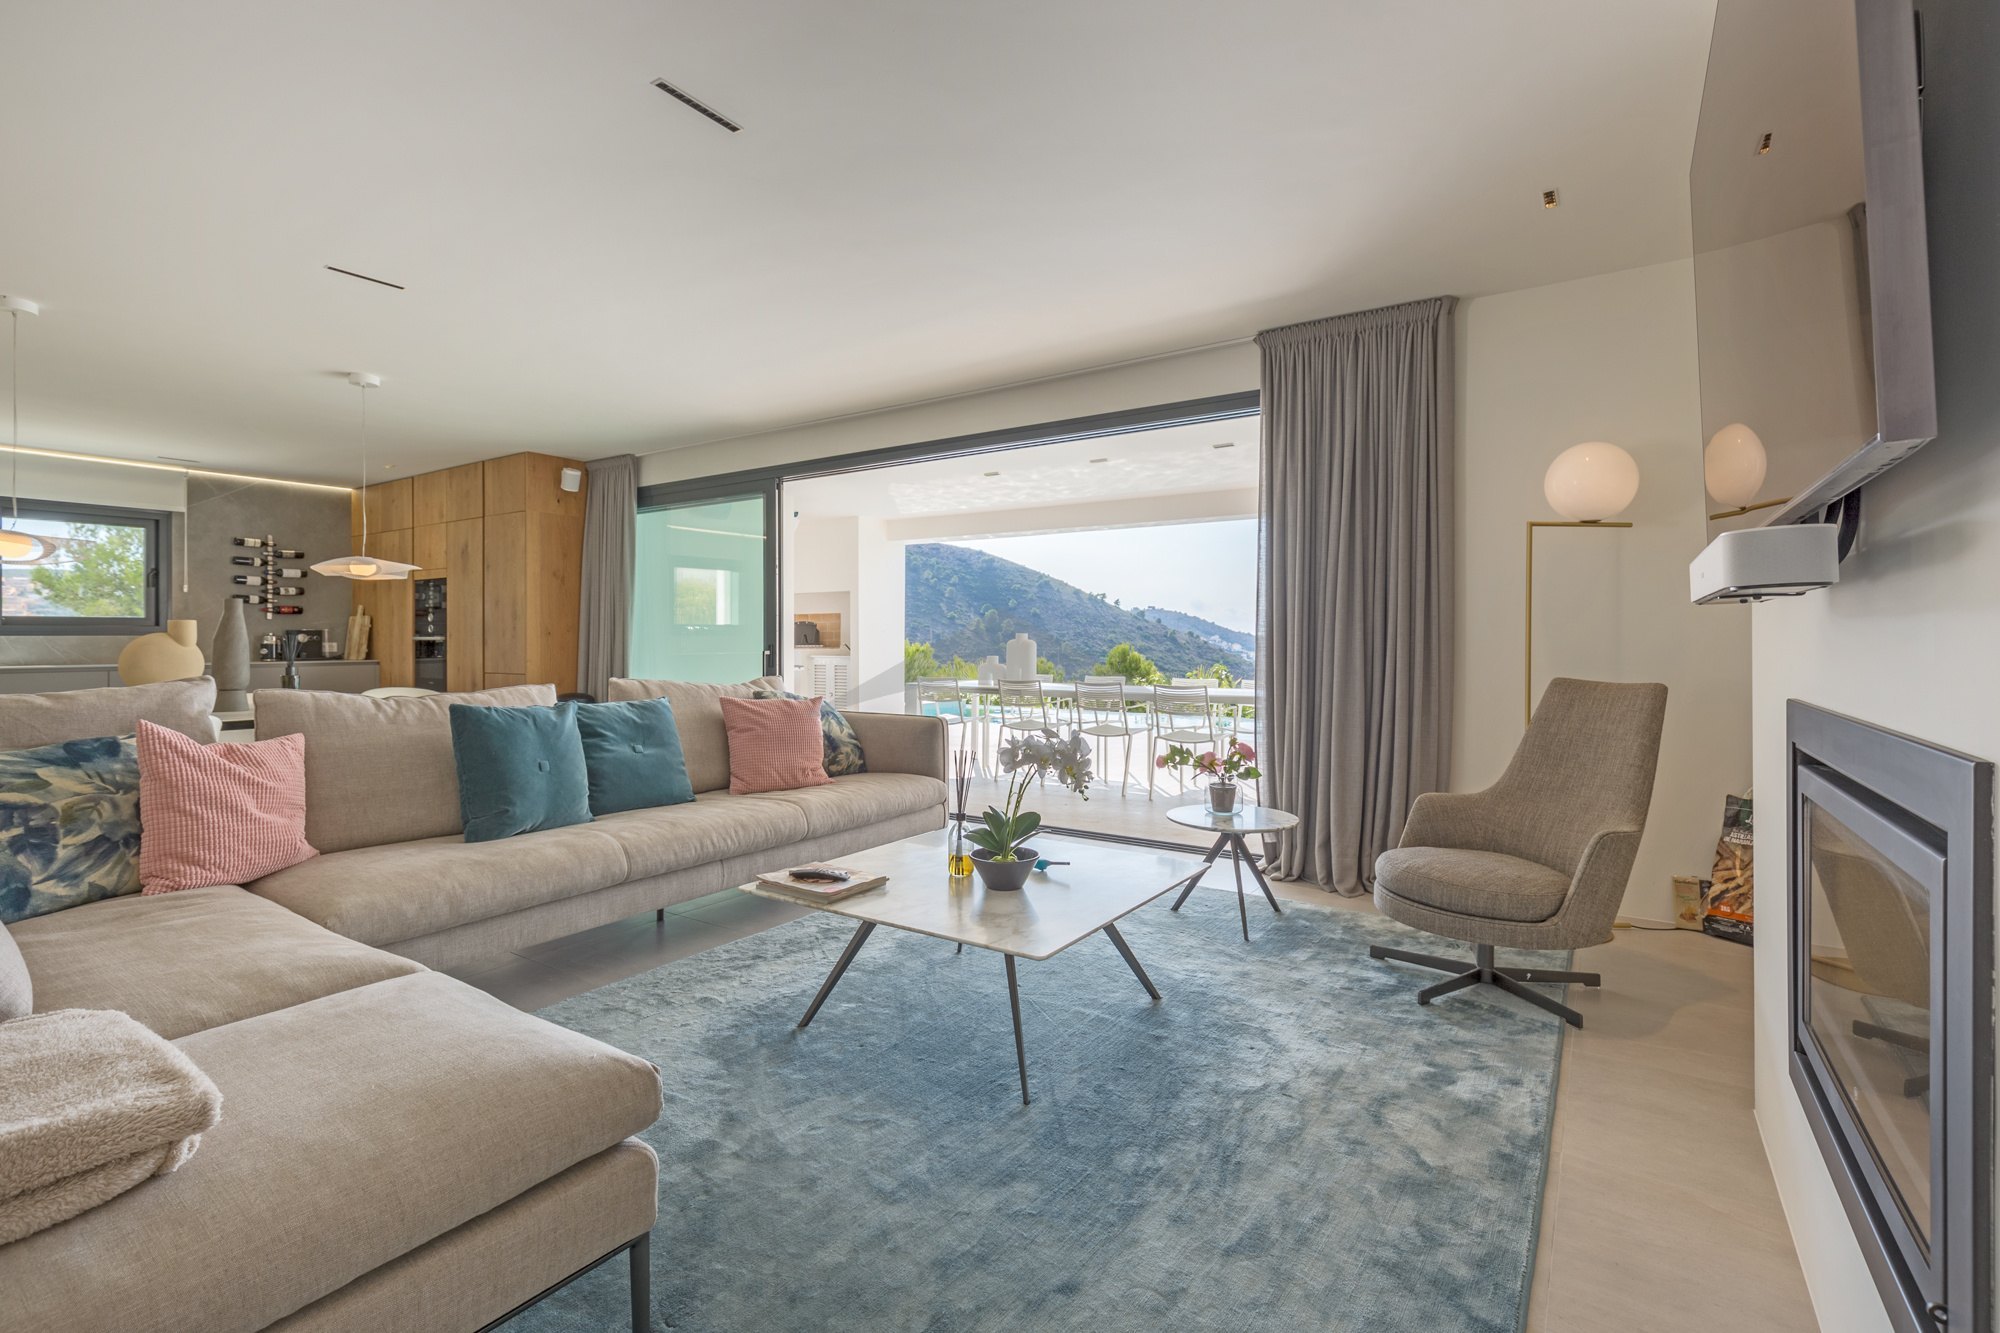 Una villa terminada de muy alta calidad con impresionantes vistas al mar en venta en Moraira